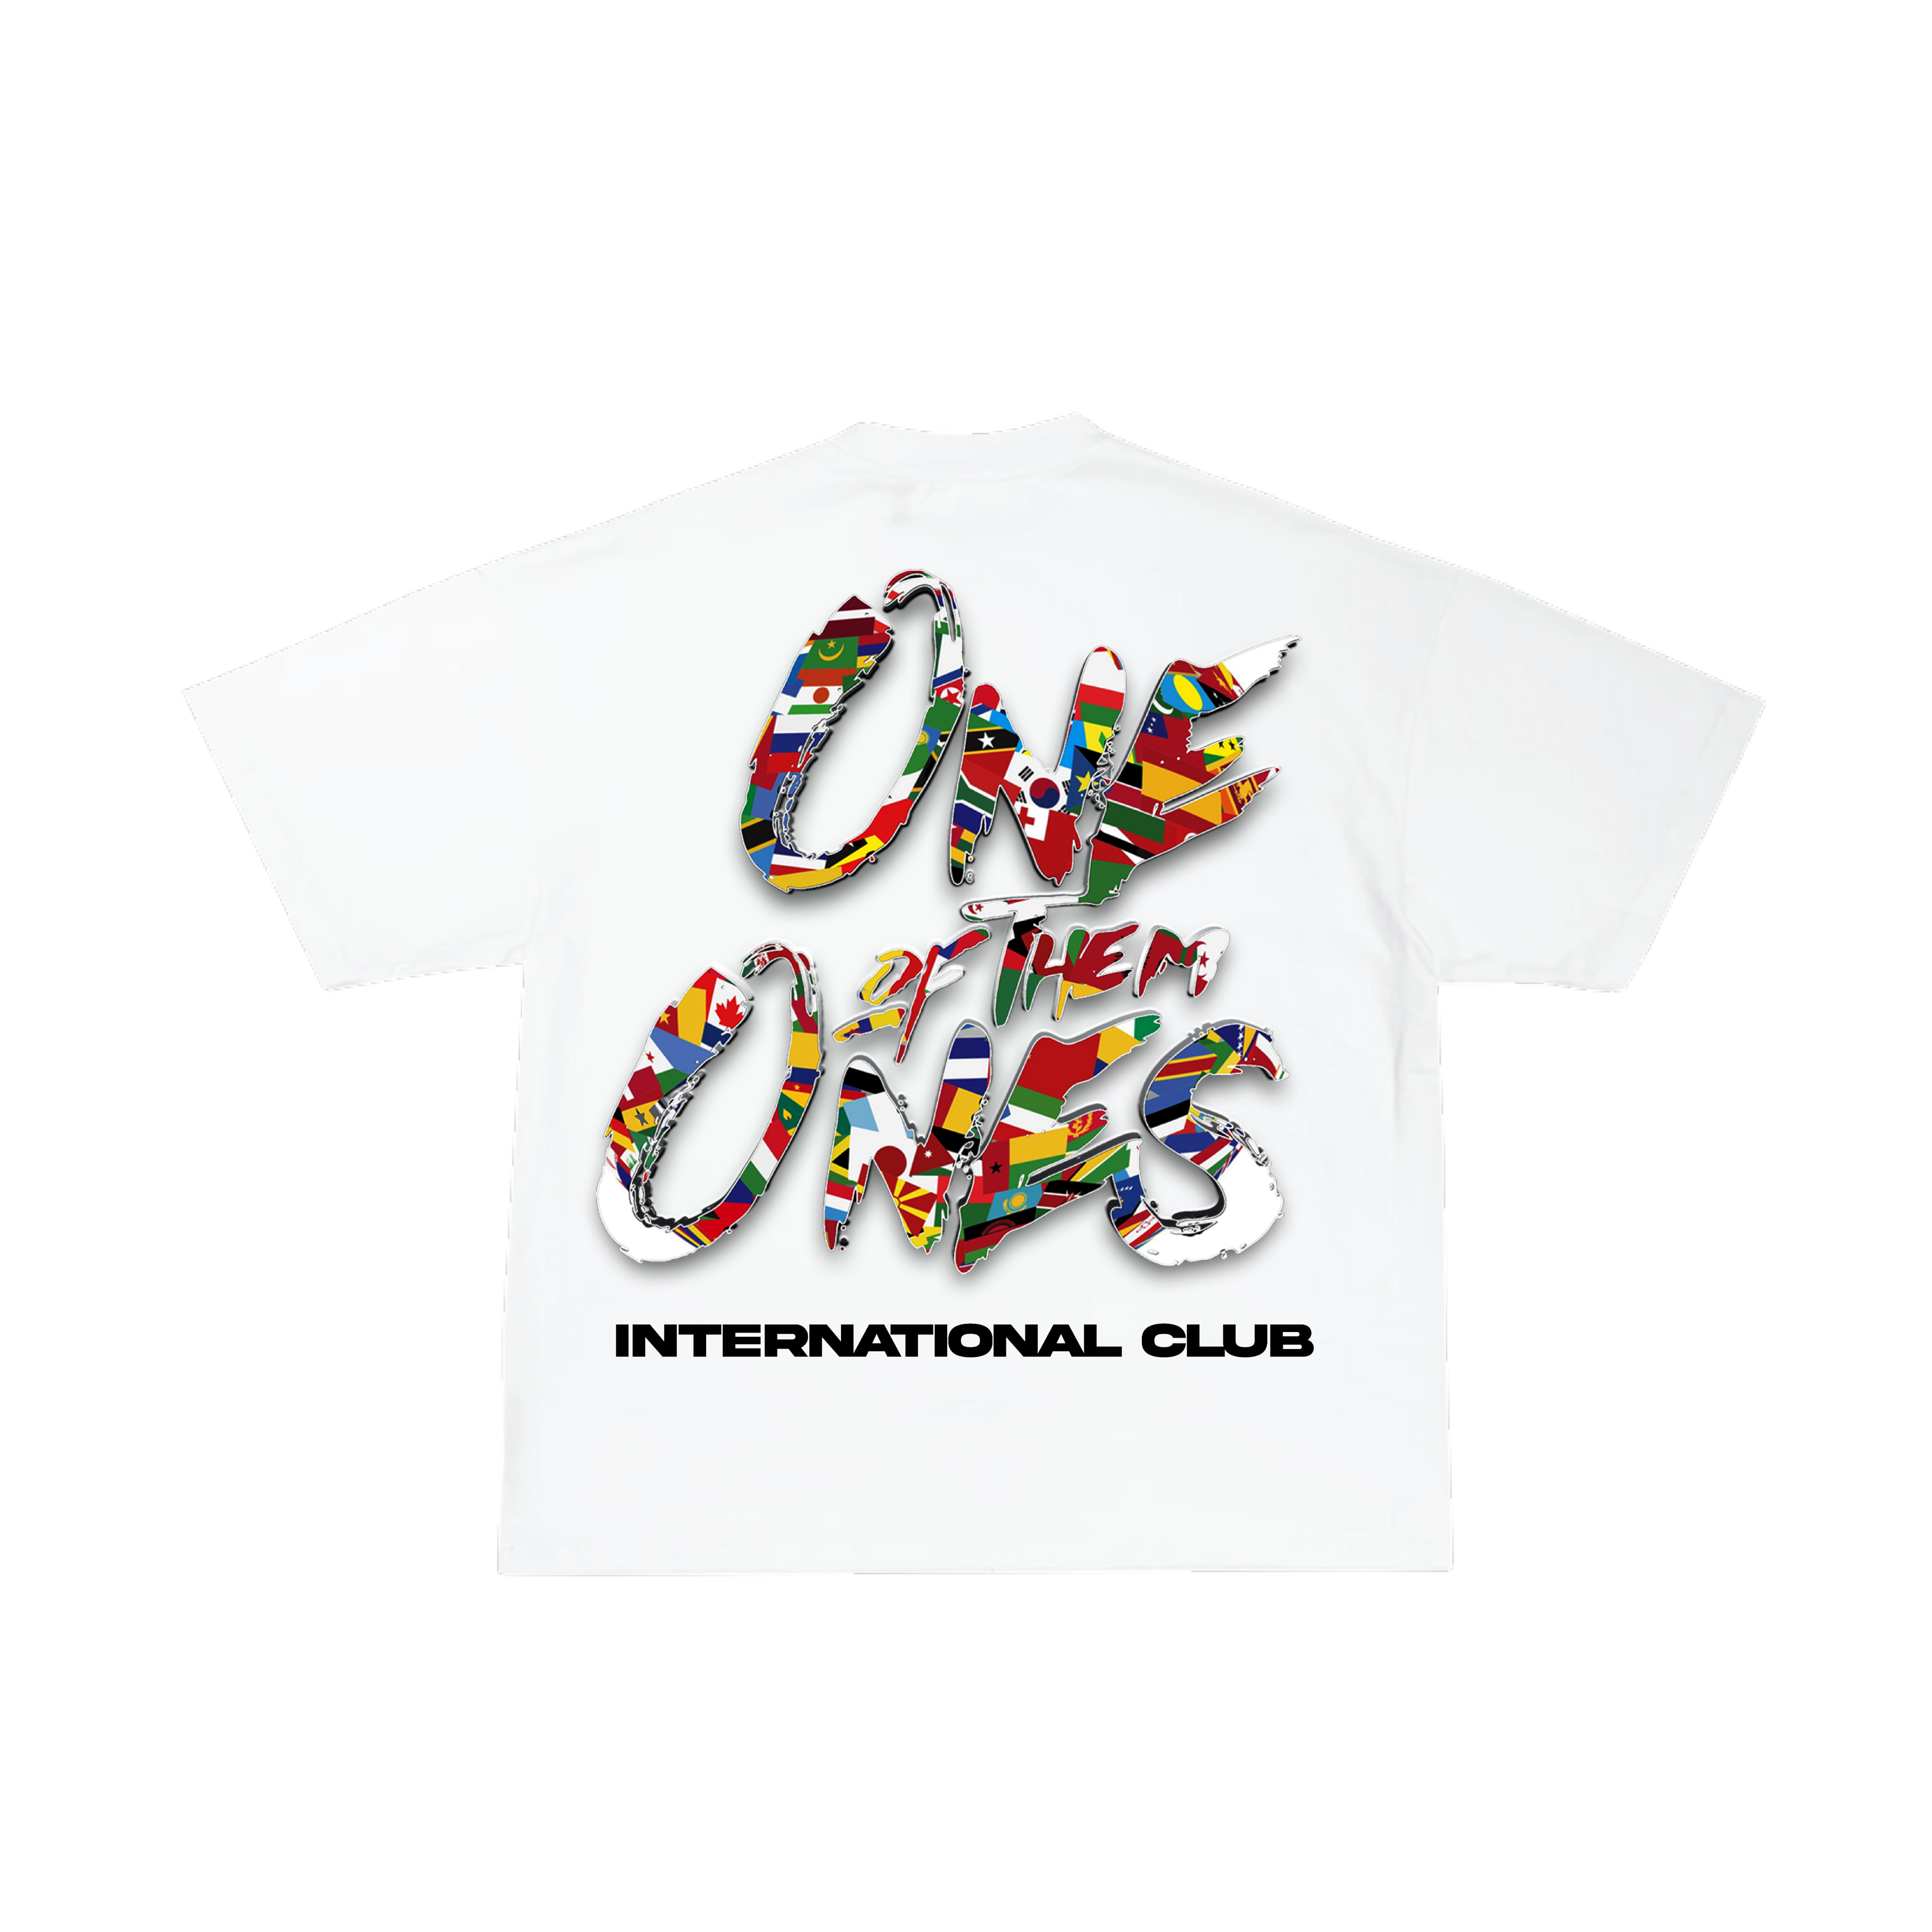 Organik Lyfestyle - 1OFTHEM1's International Club - White T-Shirt